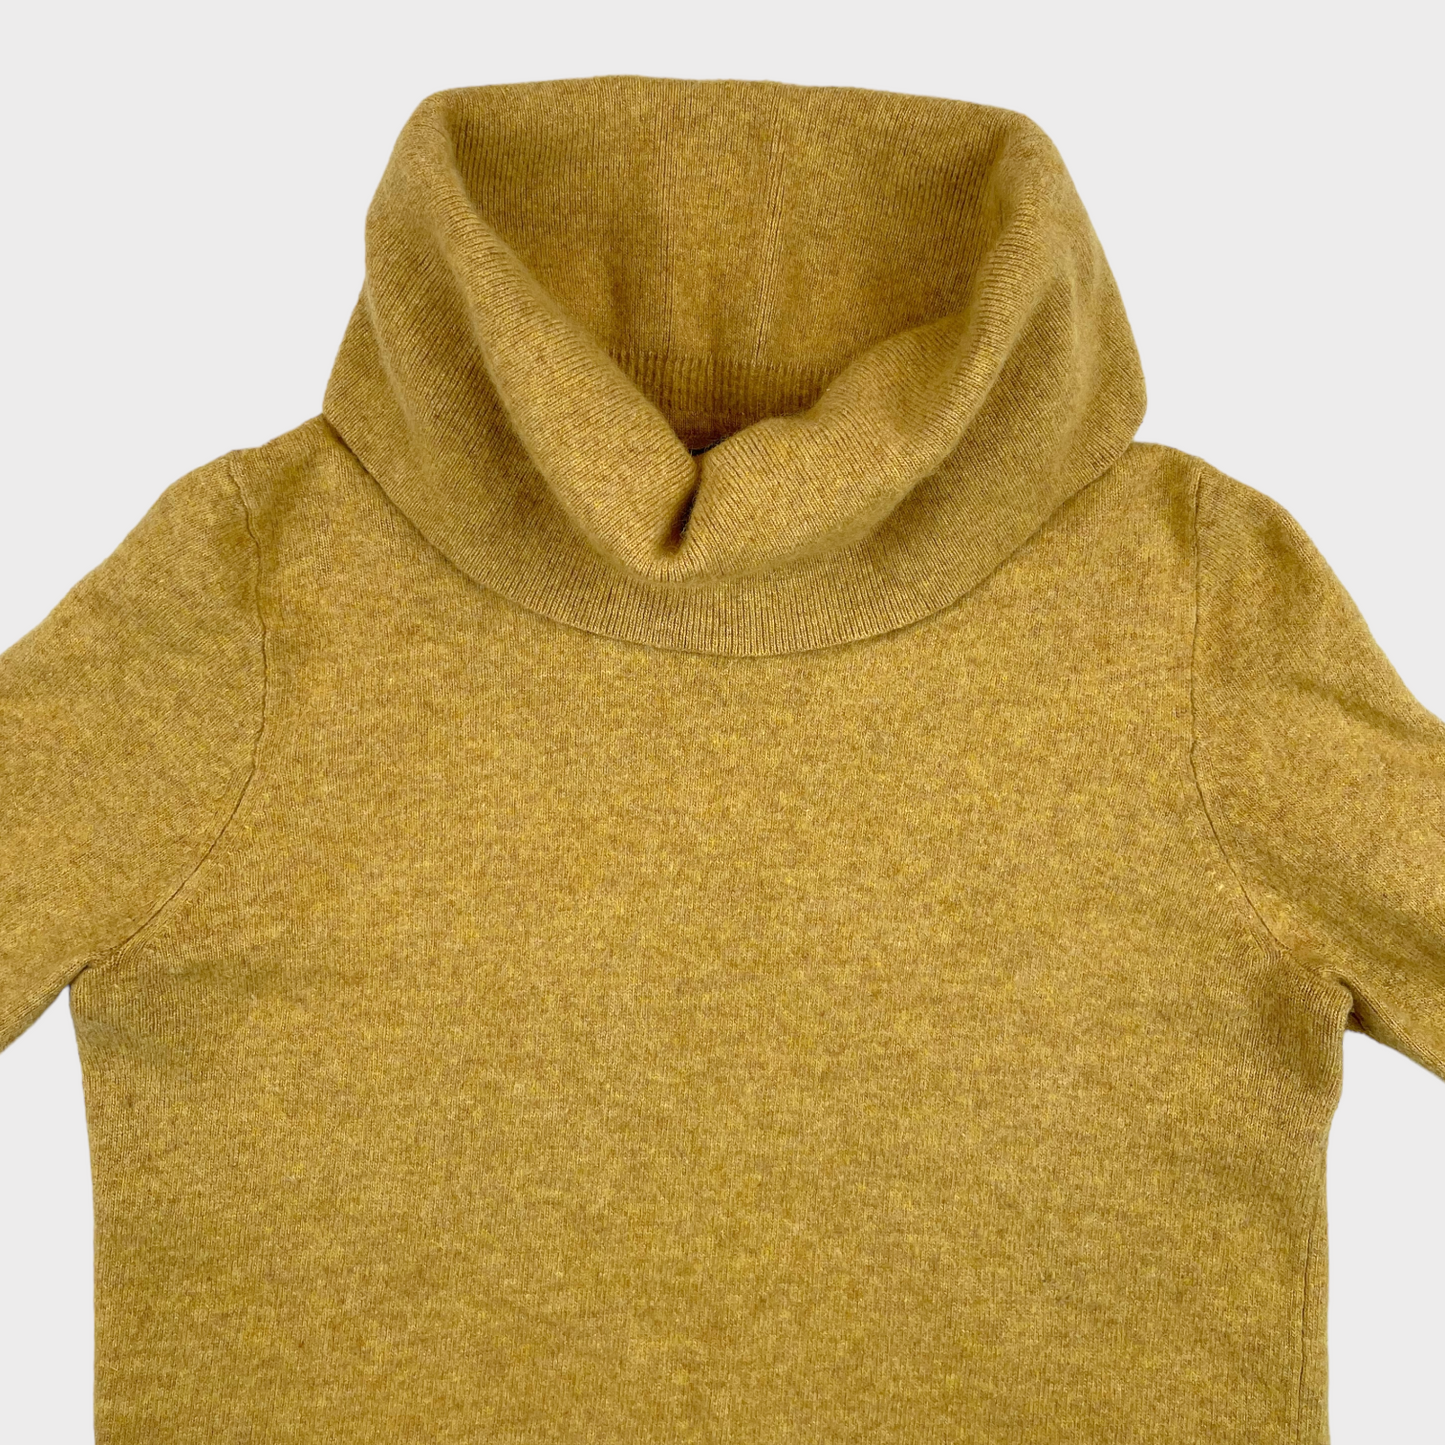 J.Crew Merino Wool Turtle Neck Yellow Mustard Sweater Women's Size Medium